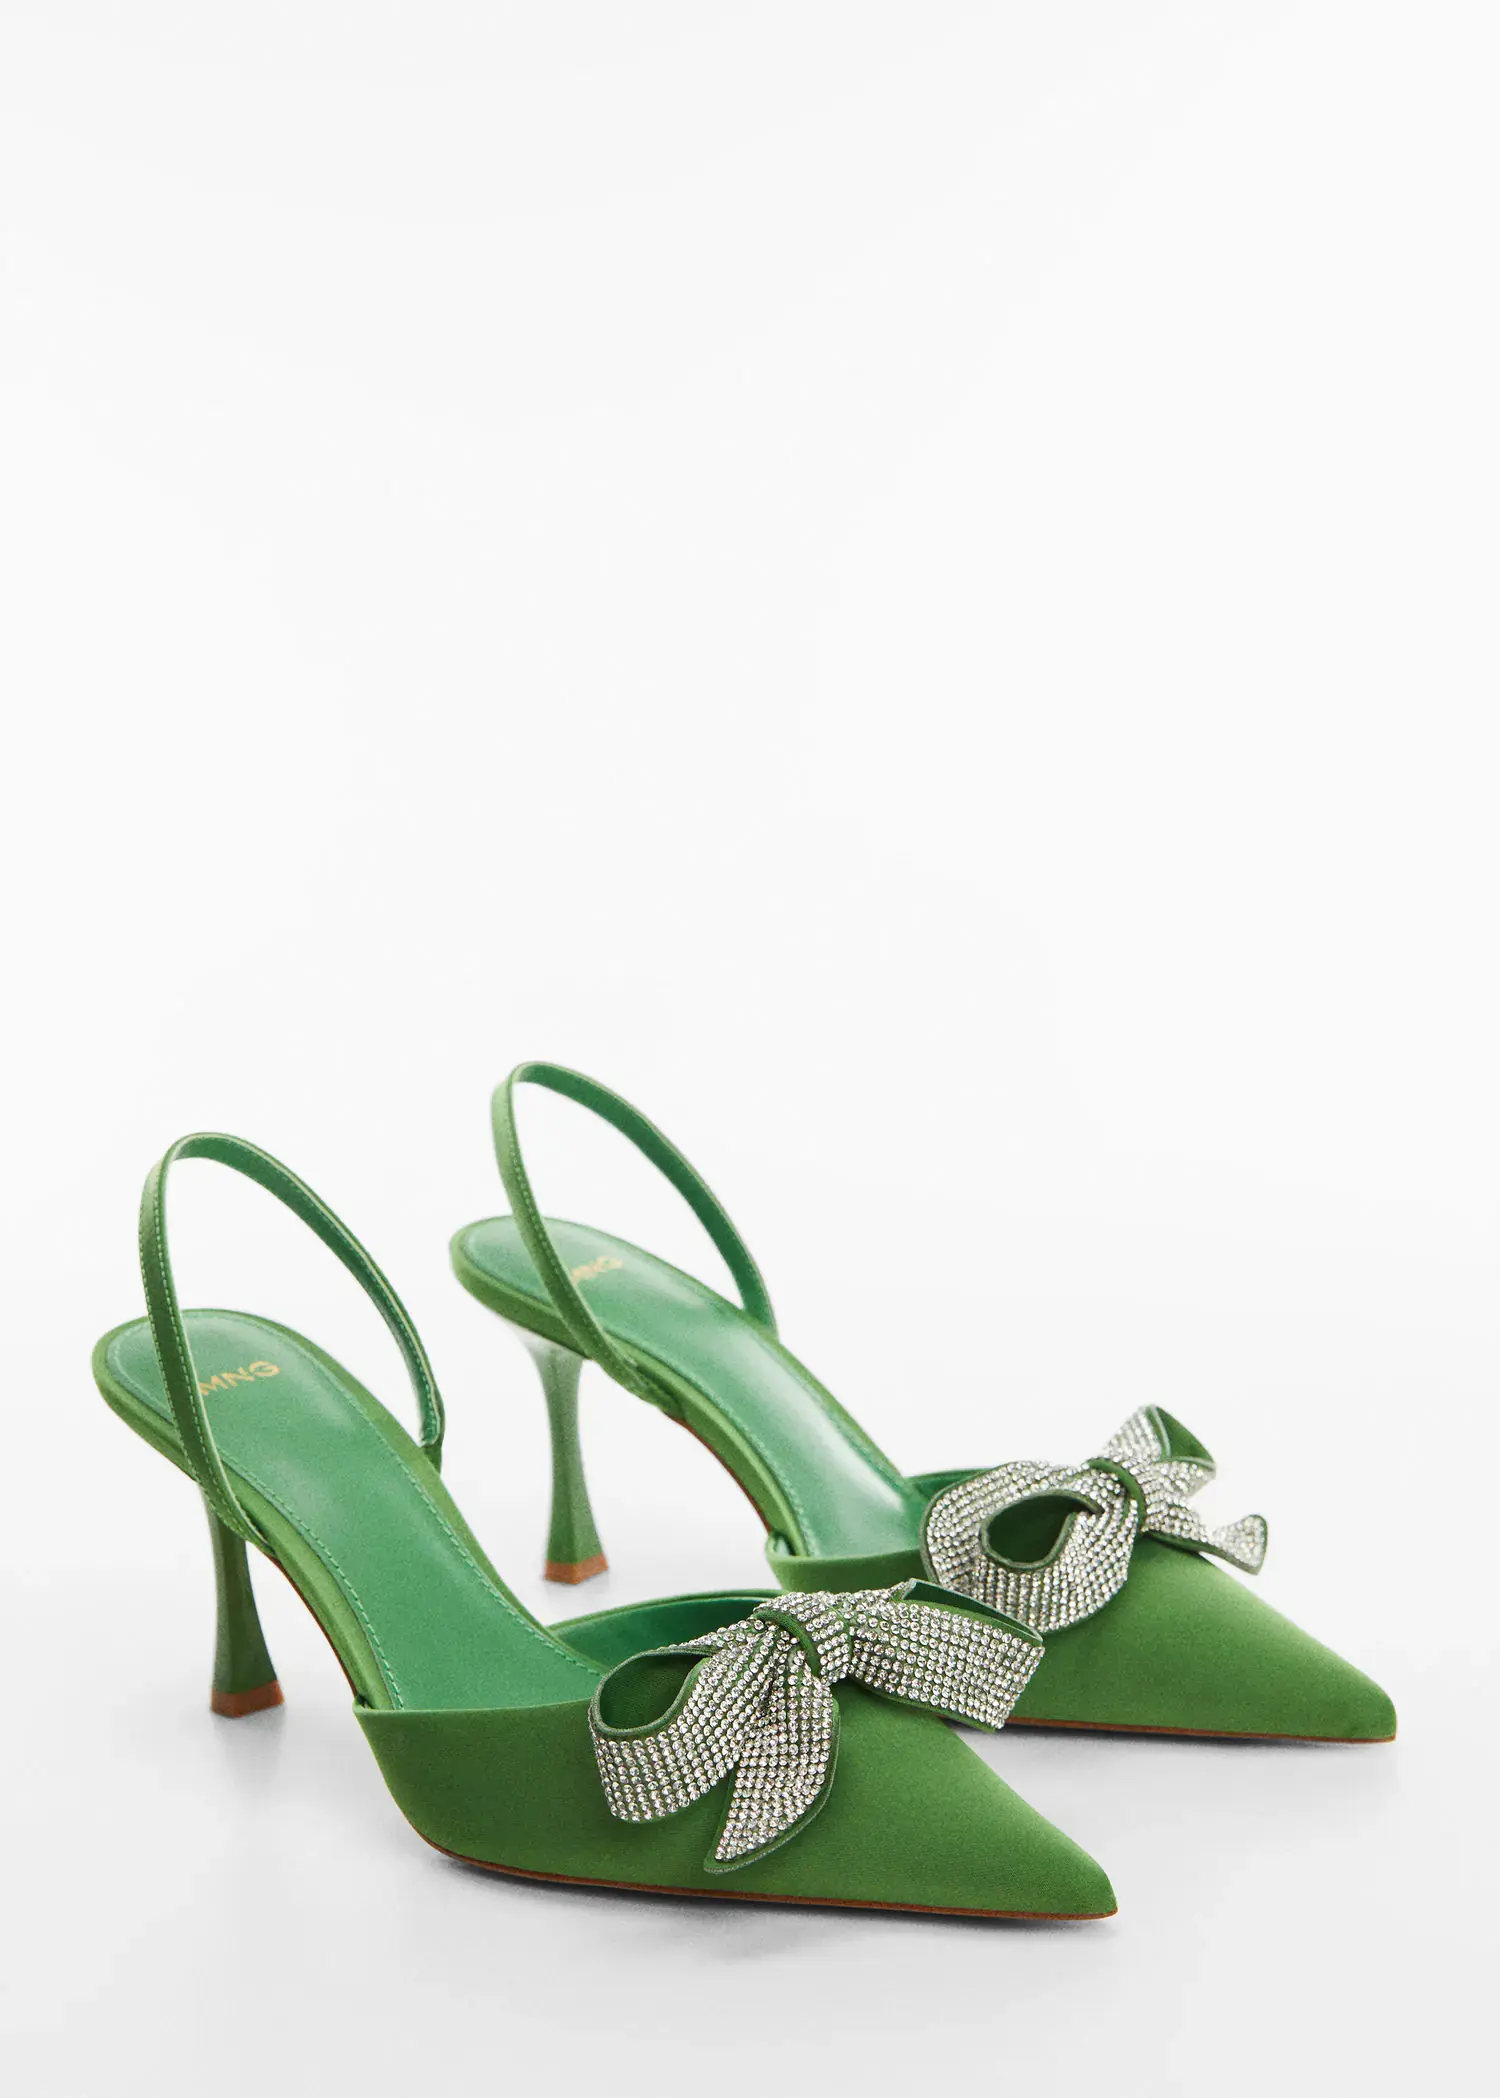 Mango Bow-heeled shoes. 1